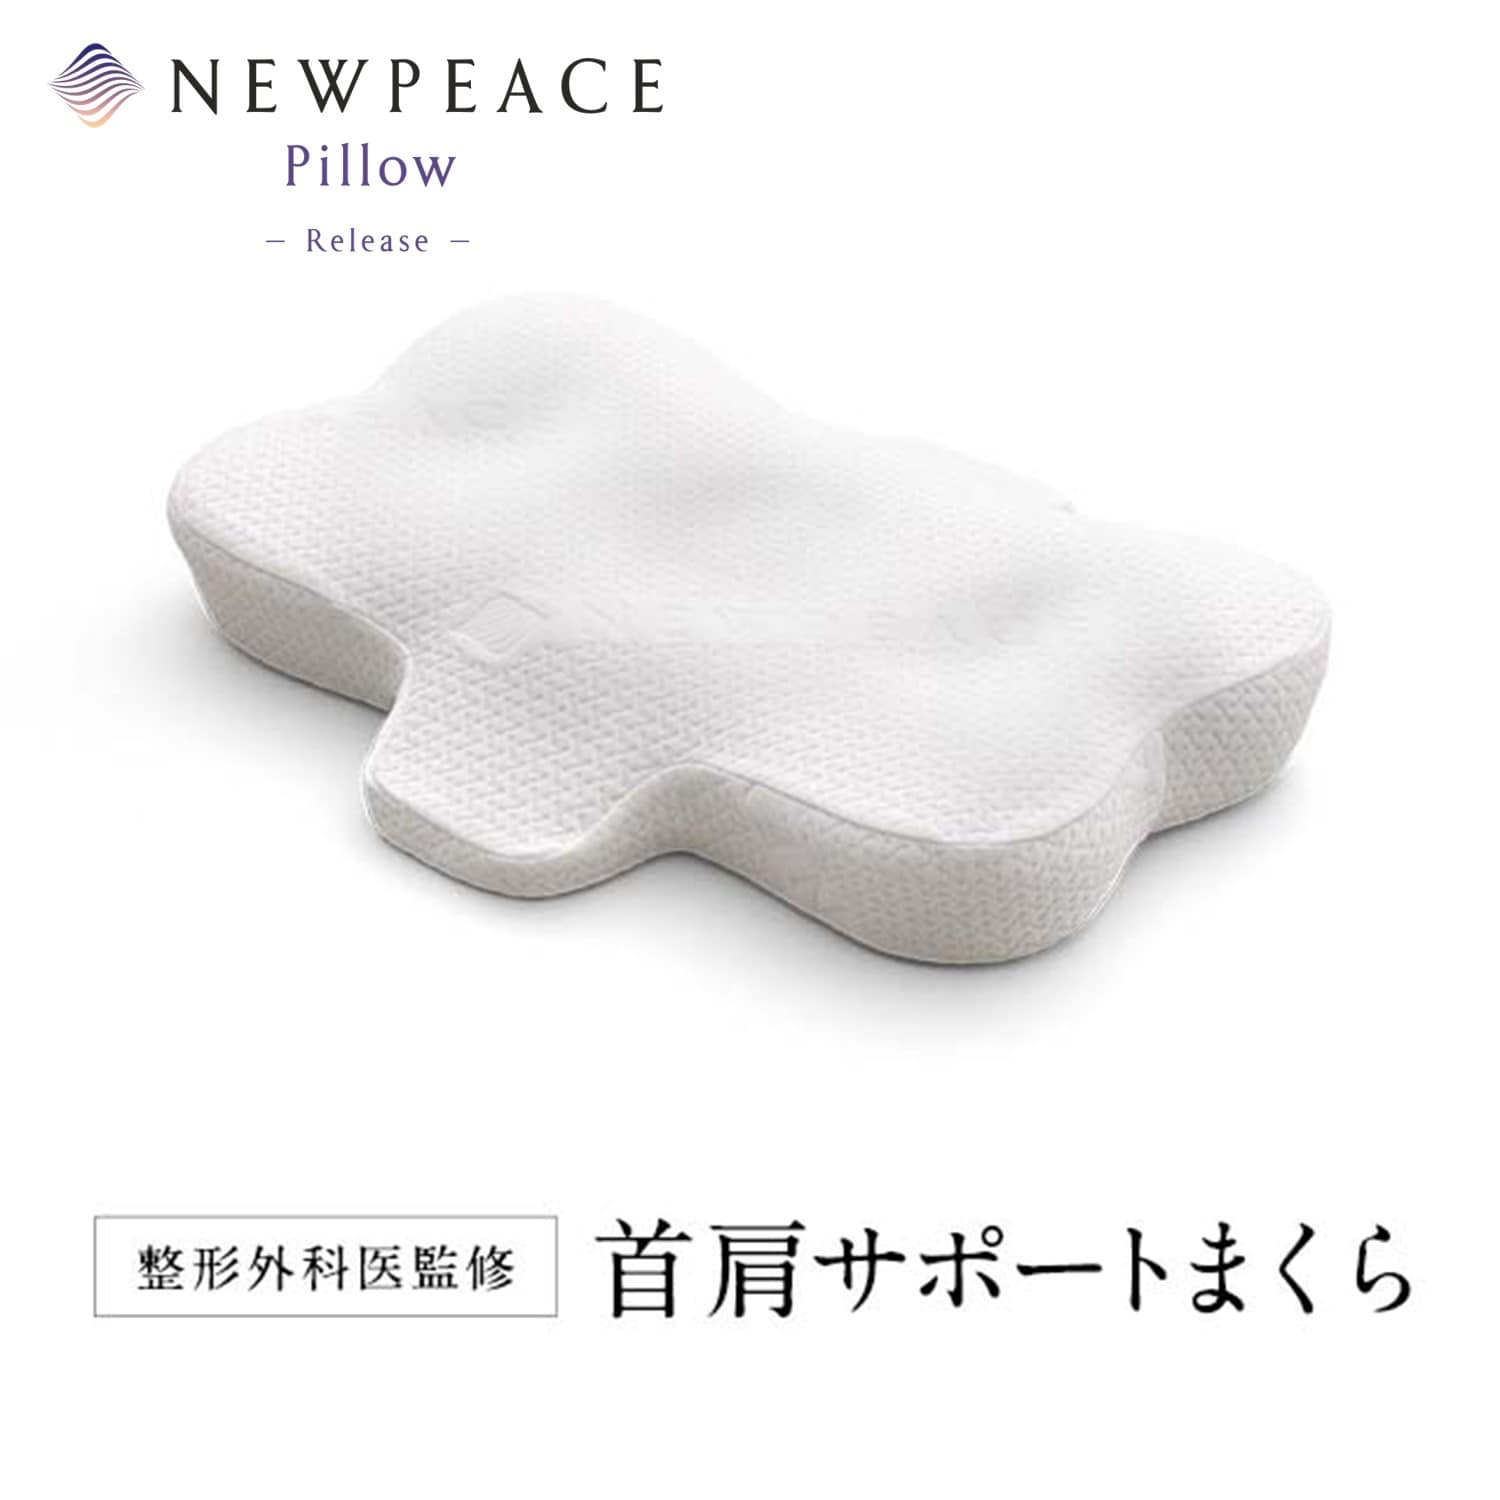 【ニューピース/NEWPEACE】NEWPEACE Pillow Release